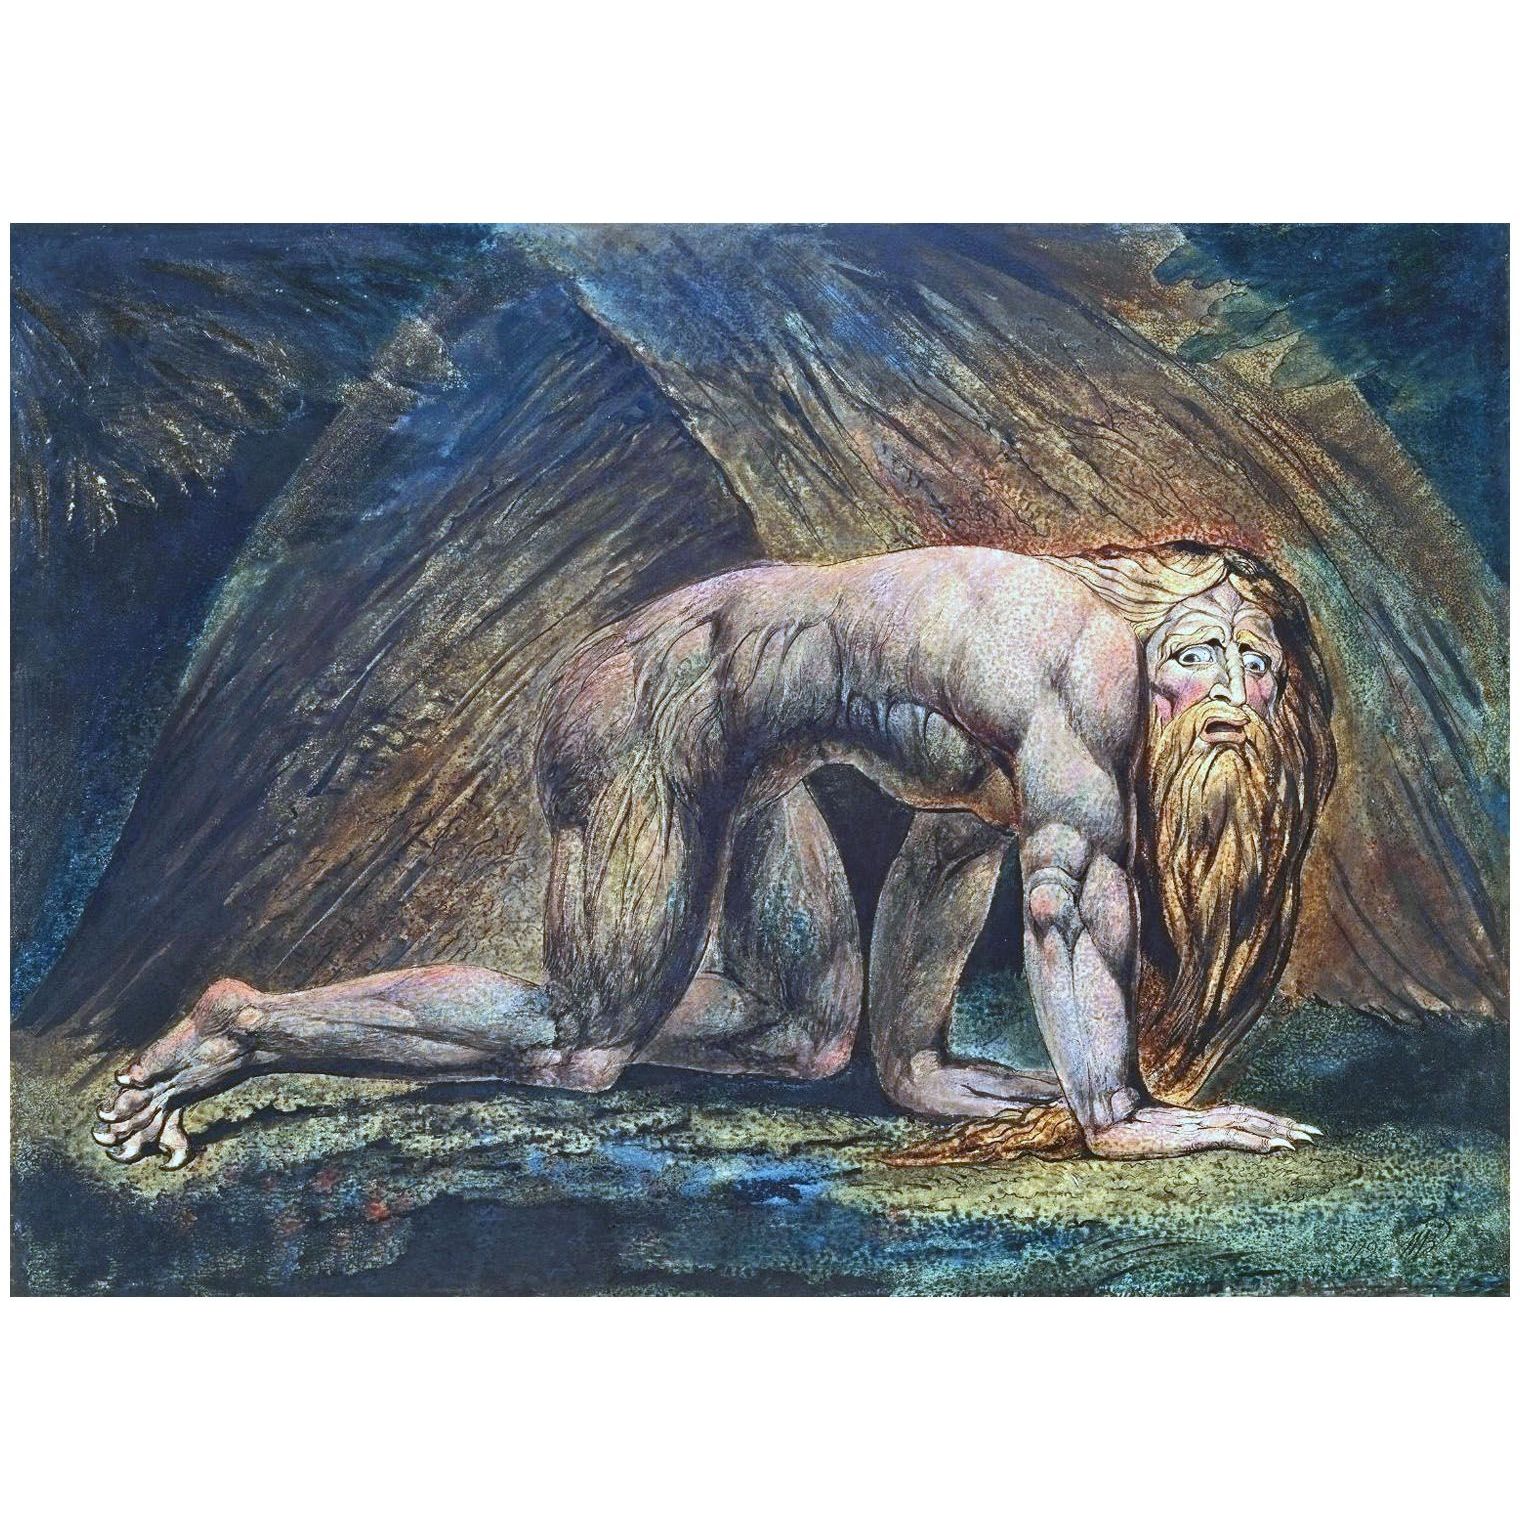 William Blake. Nebuchadnezzar. 1795/1805. Tate Britain